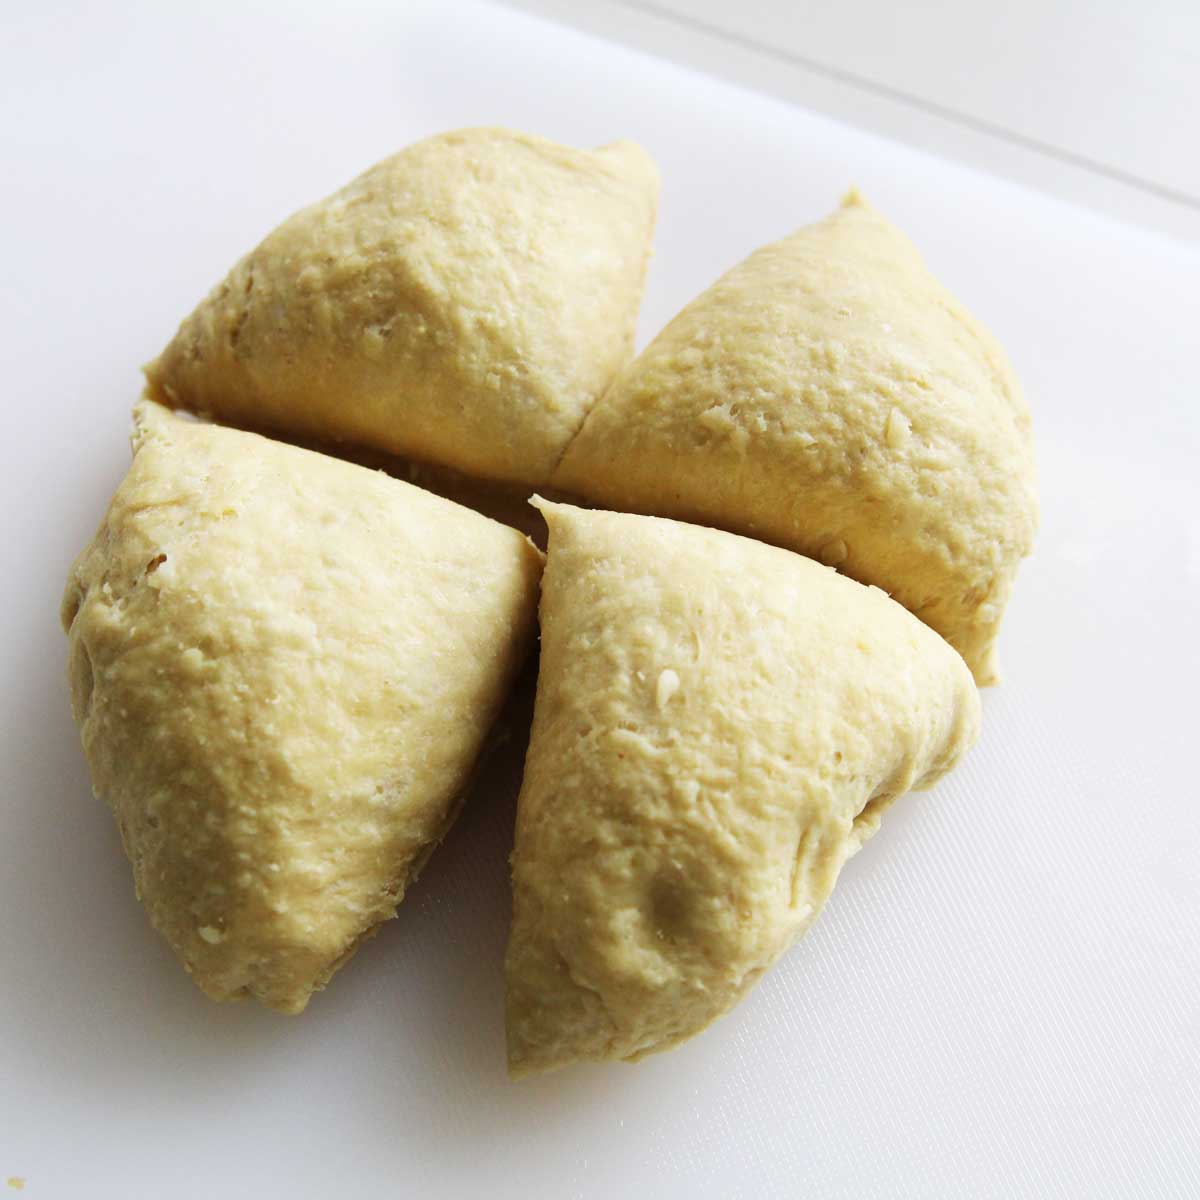 "Cheesy" Cauliflower Bagel (Easy Vegan-Friendly Recipe) - cauliflower bagel